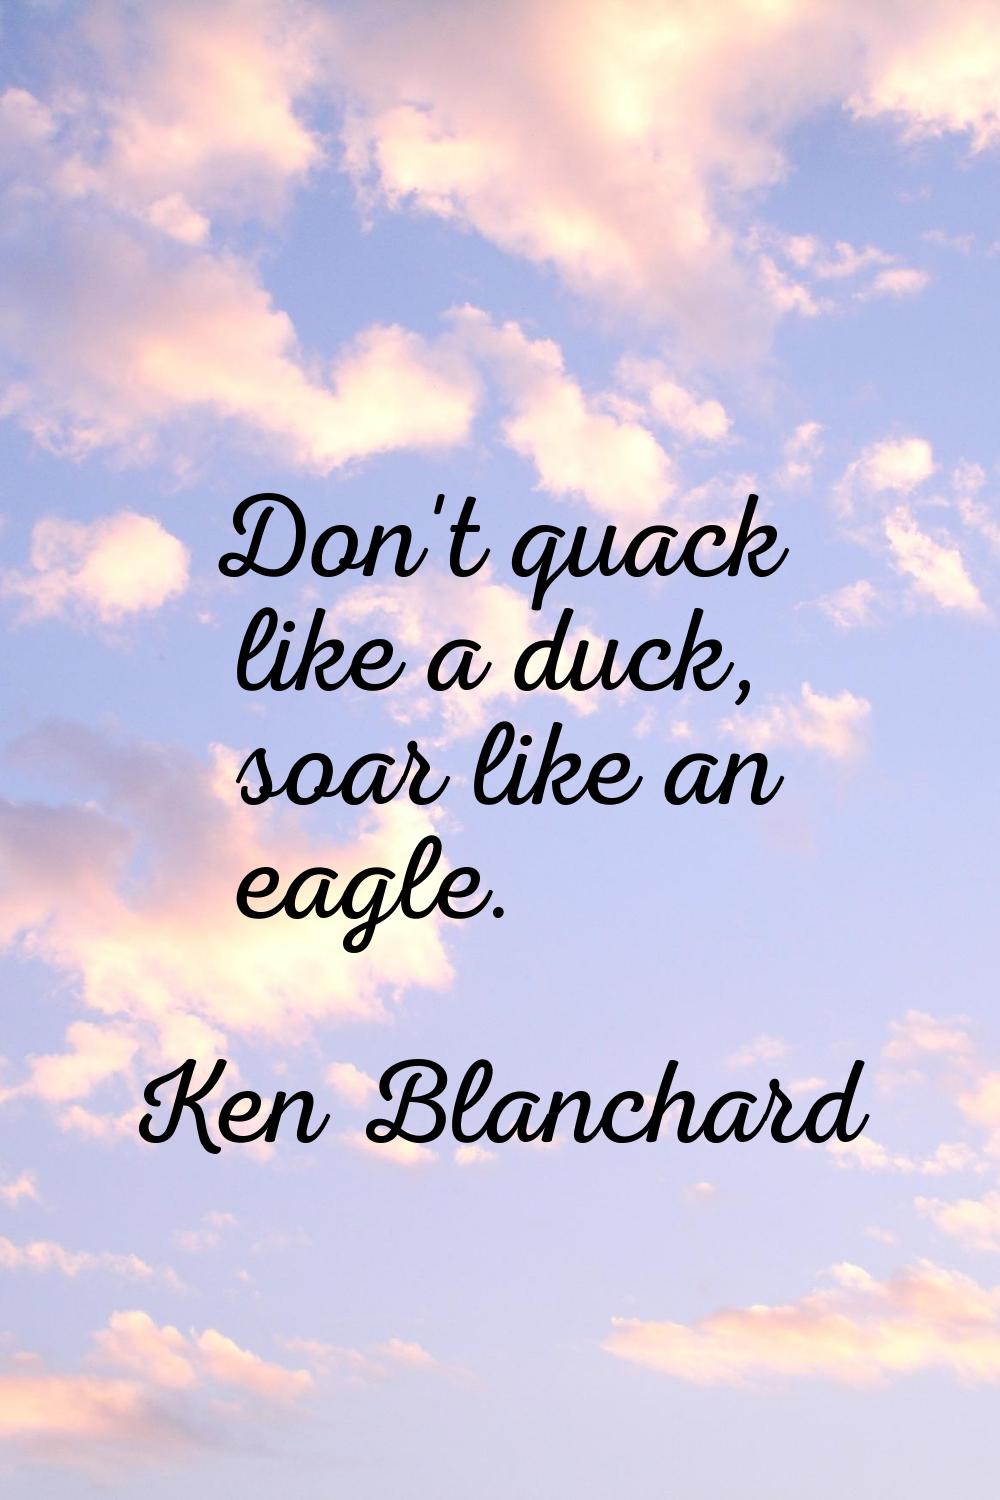 Don't quack like a duck, soar like an eagle.